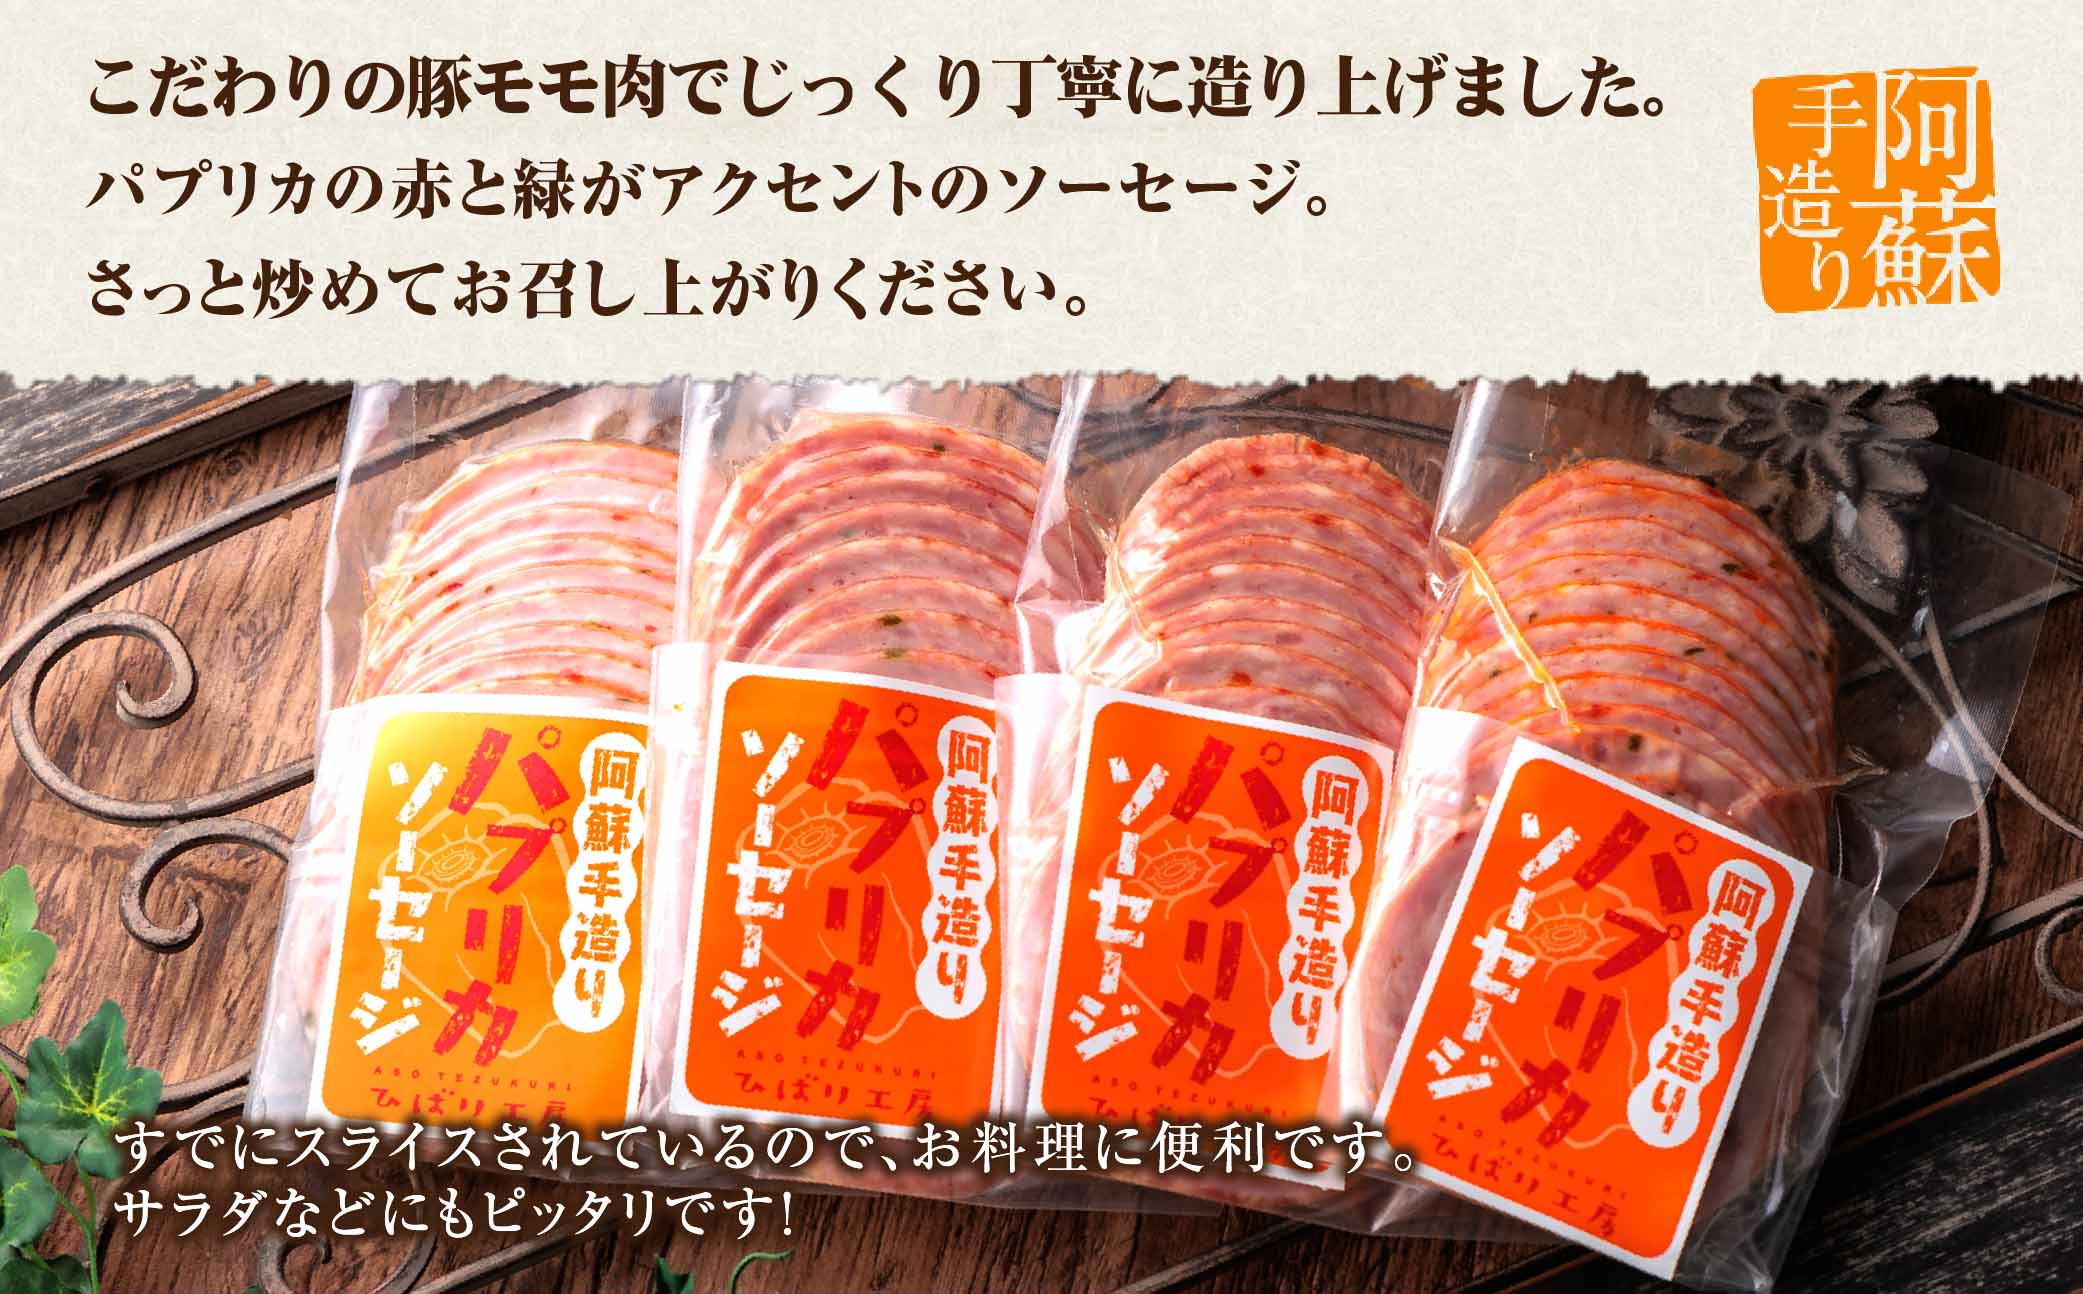 ひばり工房 パプリカスライス ソーセージ 170g×4 手造り 豚肉 ハム ソーセージ 人気 美味しい 小分け セット こだわり 熊本 阿蘇